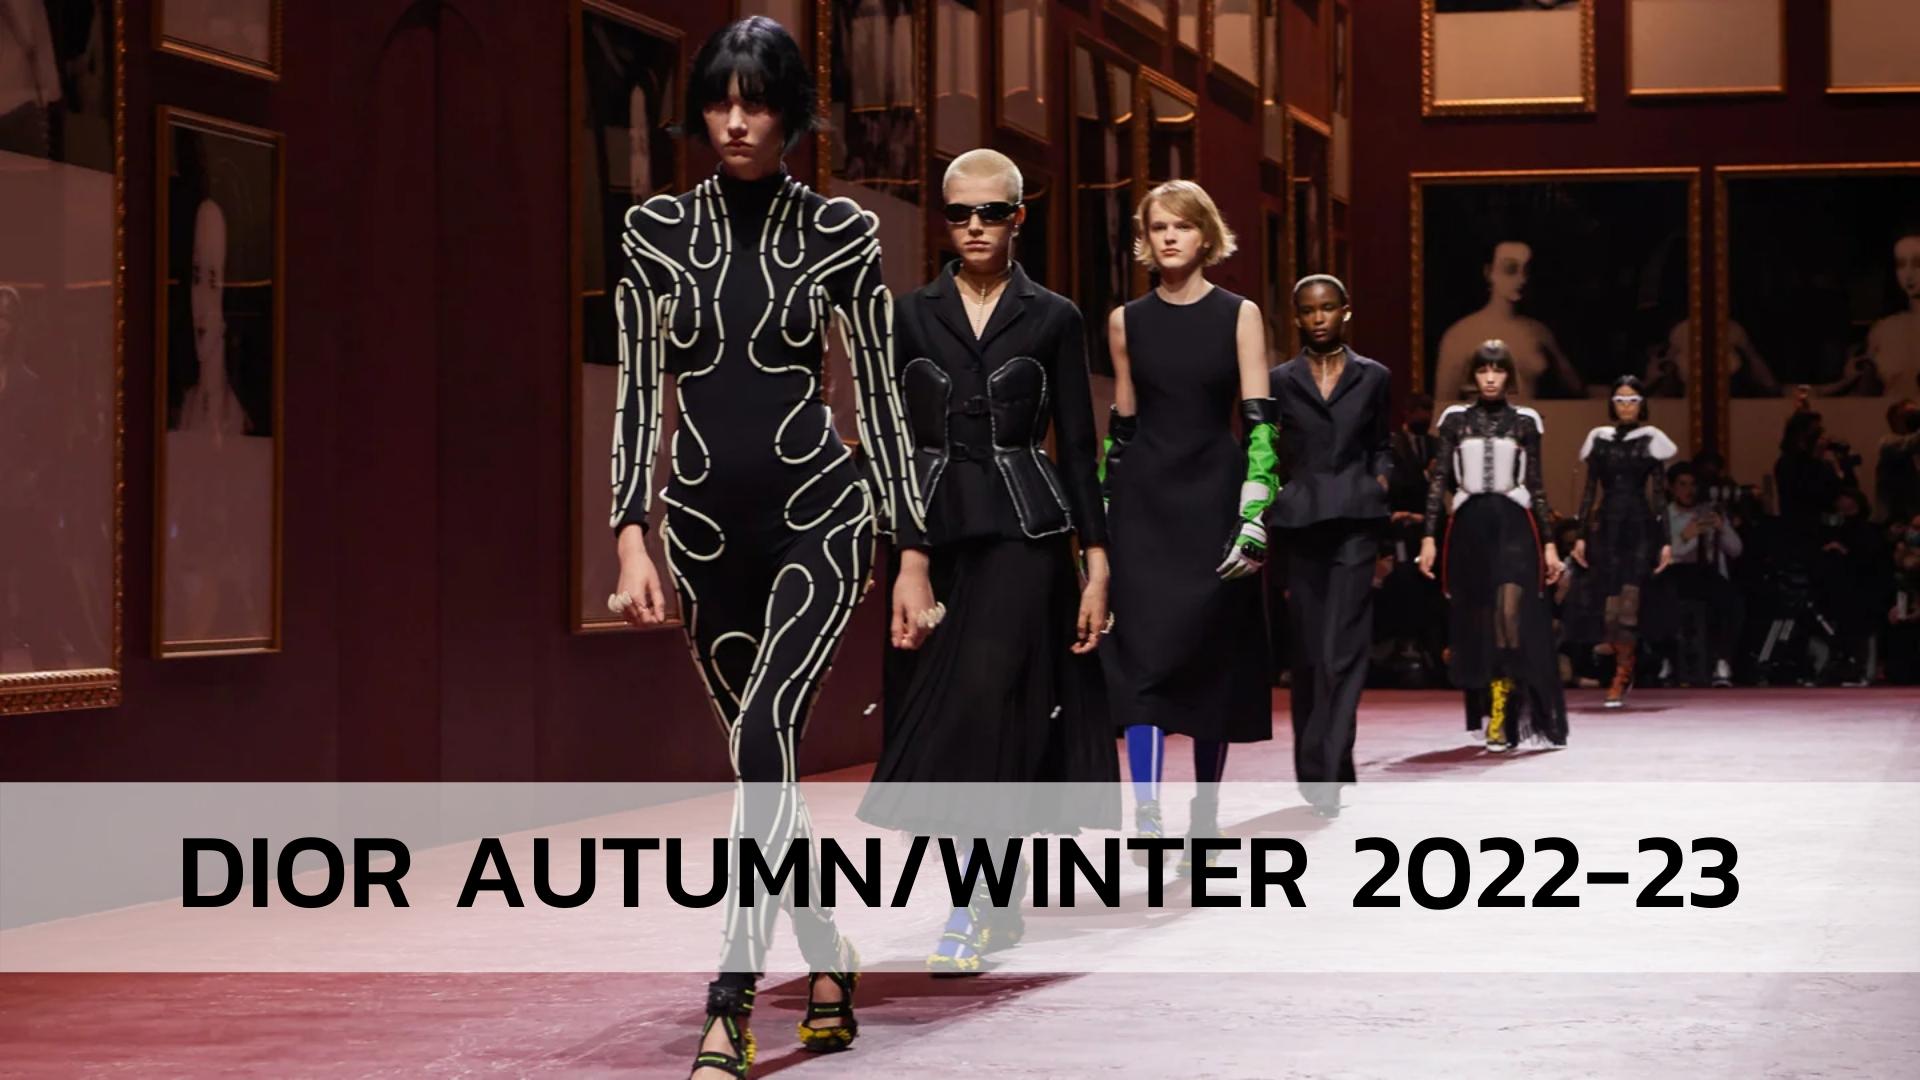 Dior Autumn/Winter 2022-23